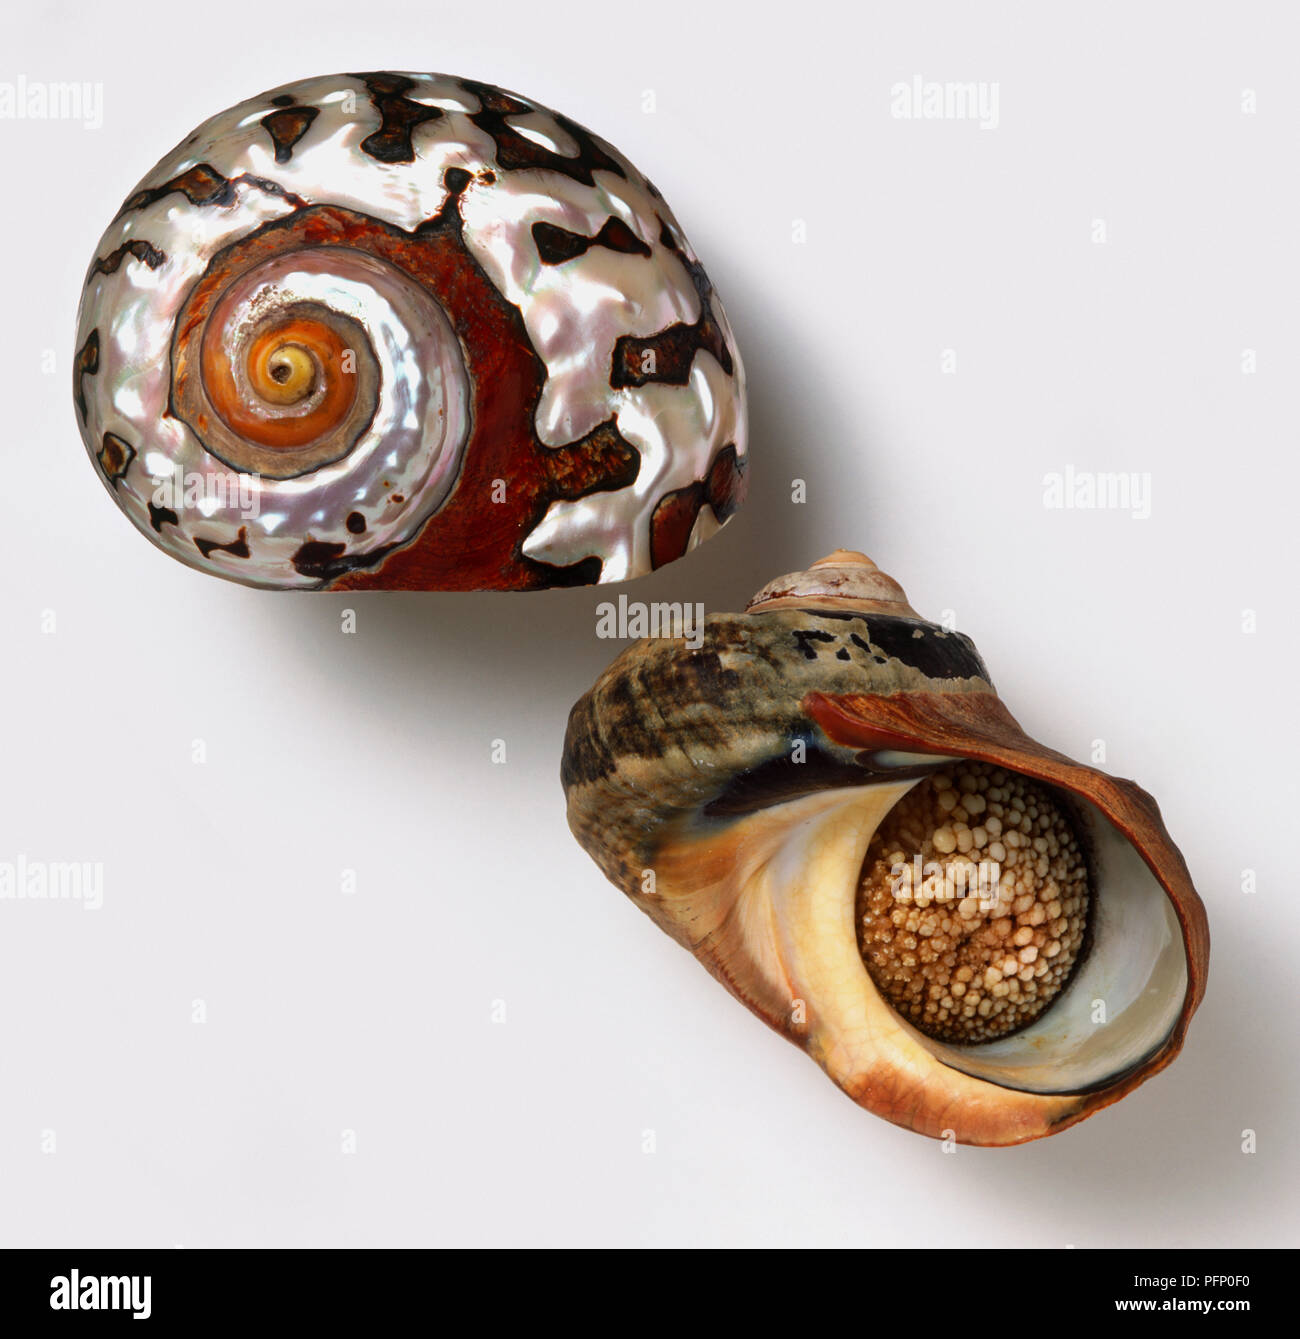 Vue latérale et le dessous de l'Afrique du Sud de turban shell (Turbo sarmaticus) Banque D'Images